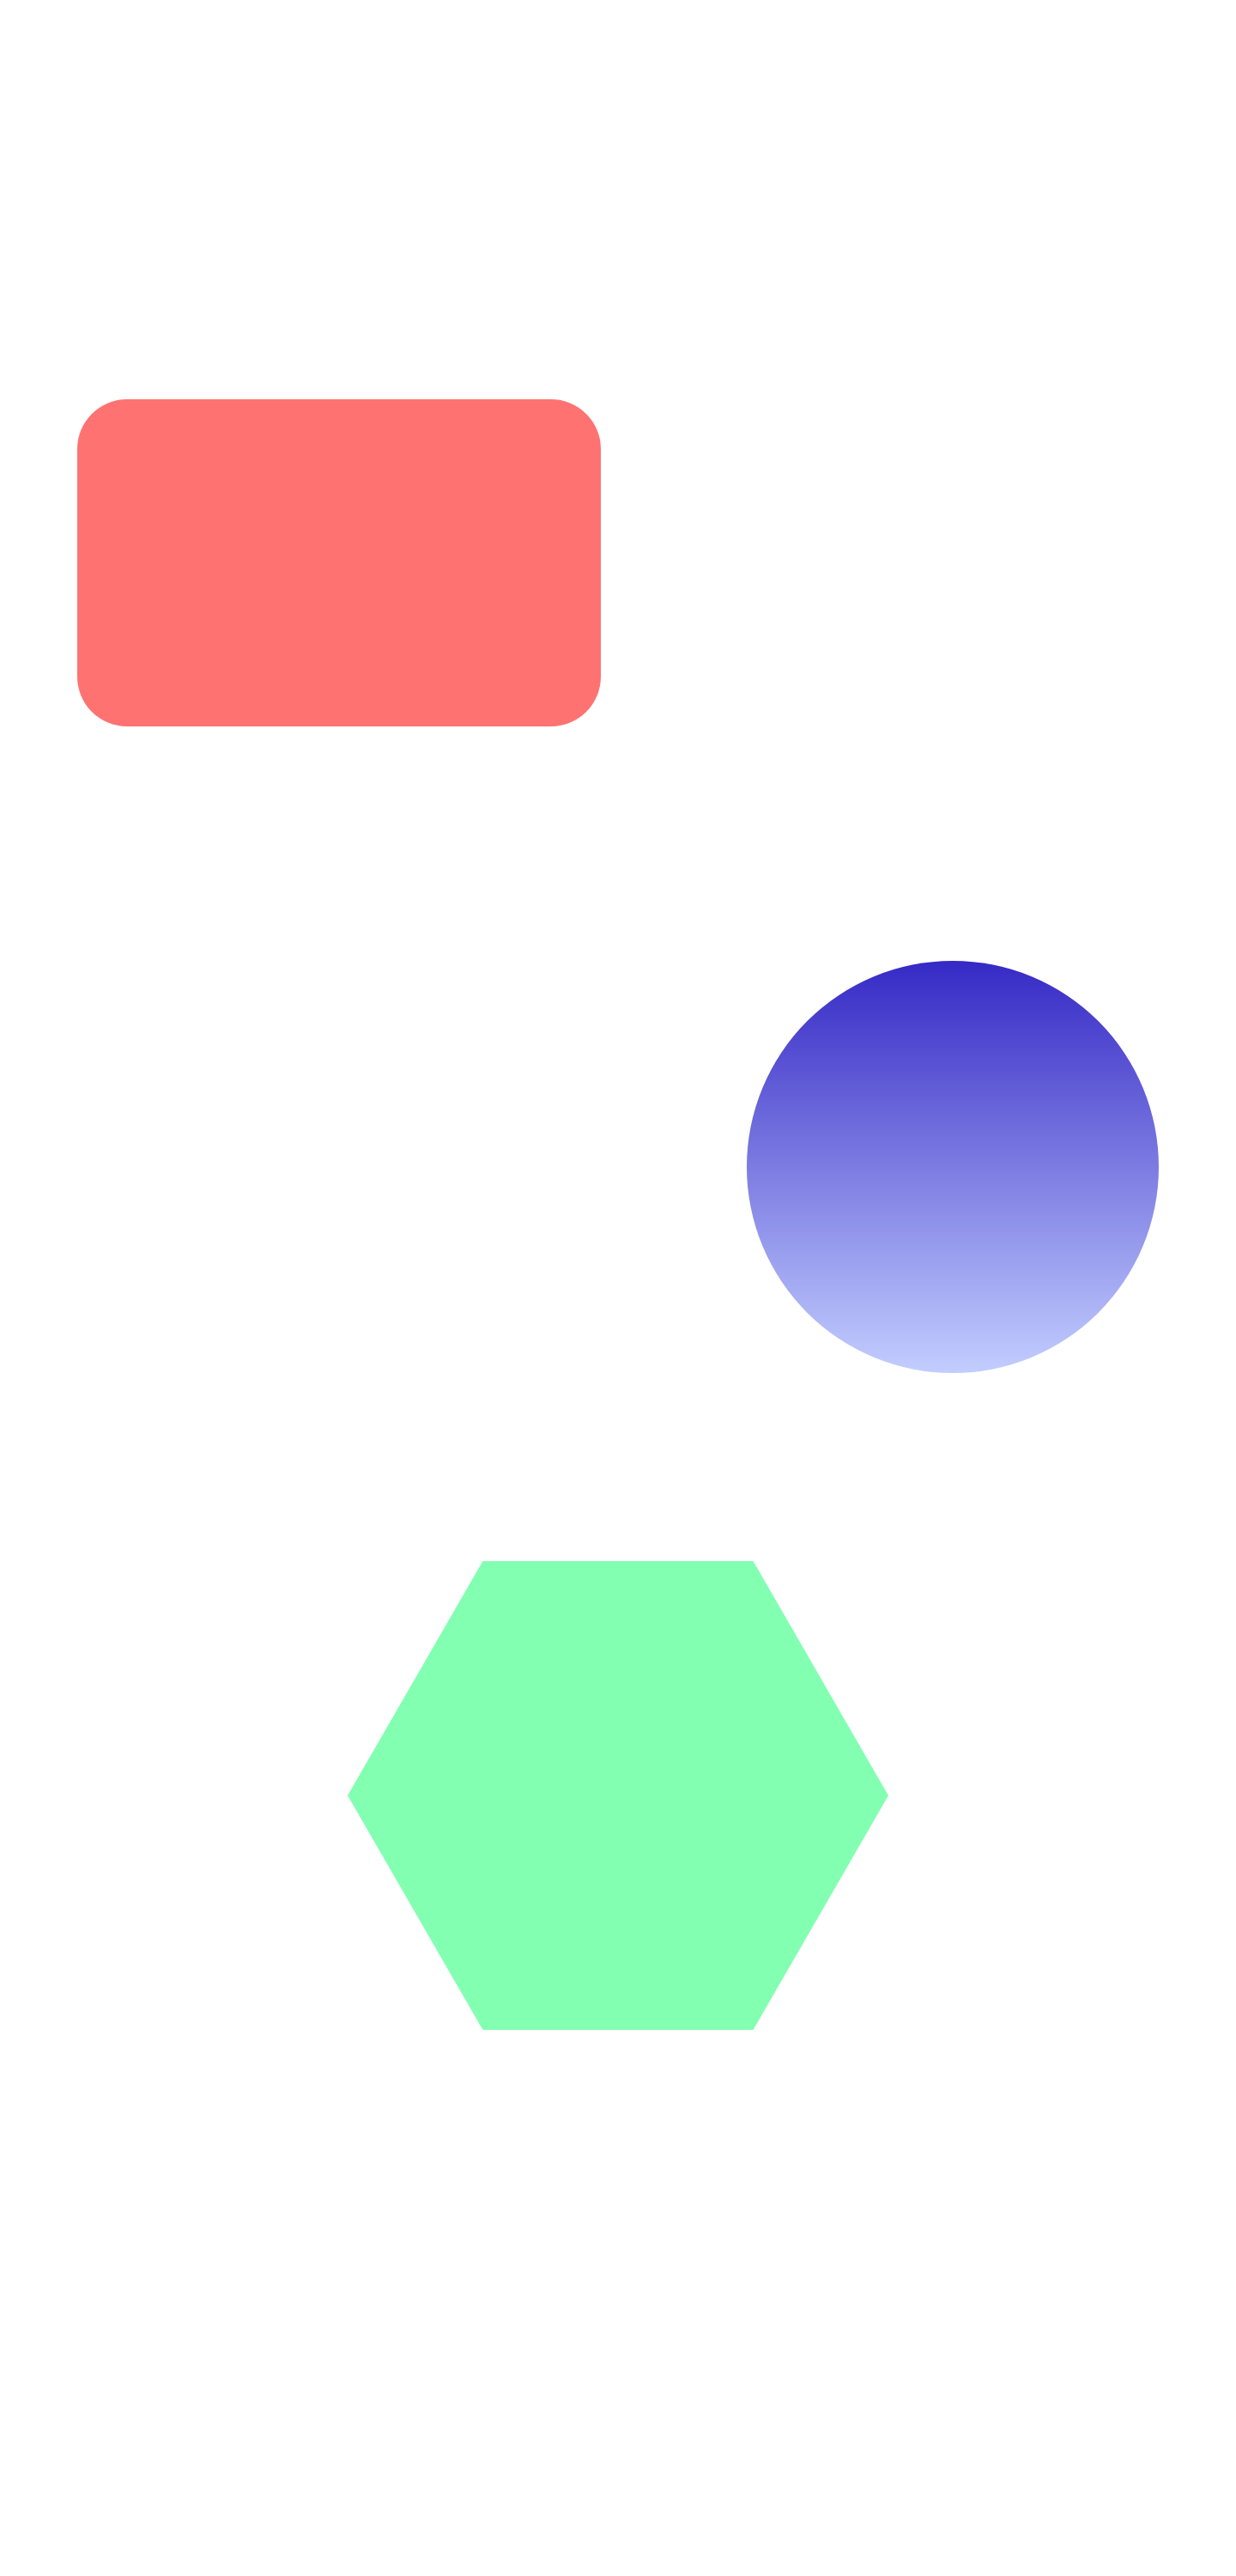 3 basic shapes